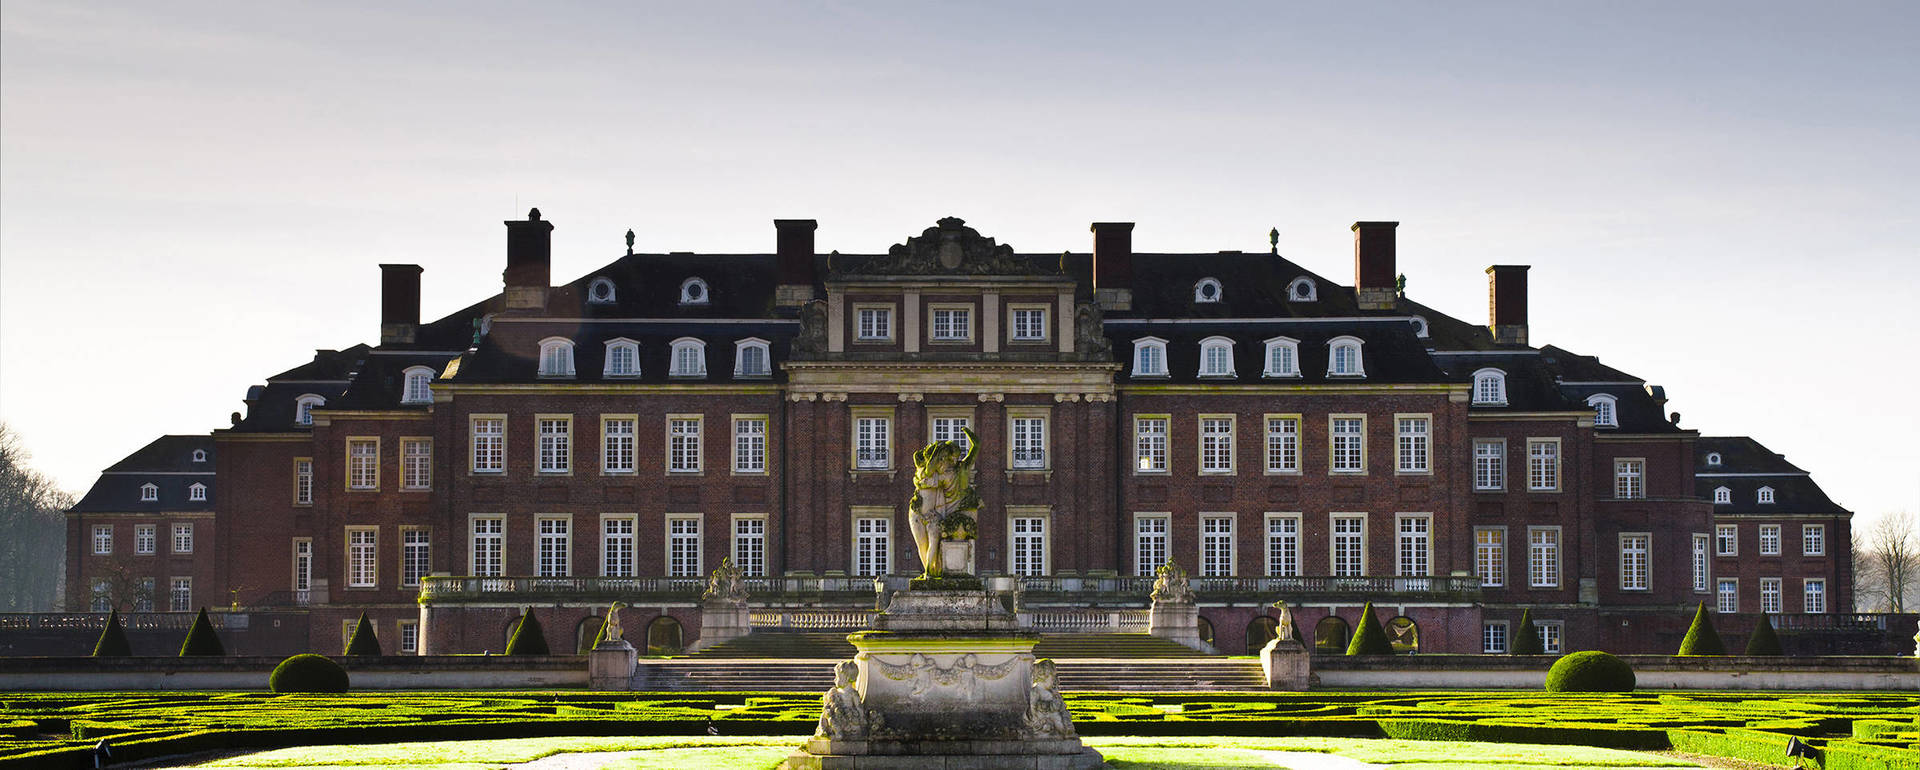 Sehenswürdigkeiten wie Schloss Nordkirchen besuchen - H4 Hotel Münster - Offizielle Webseite